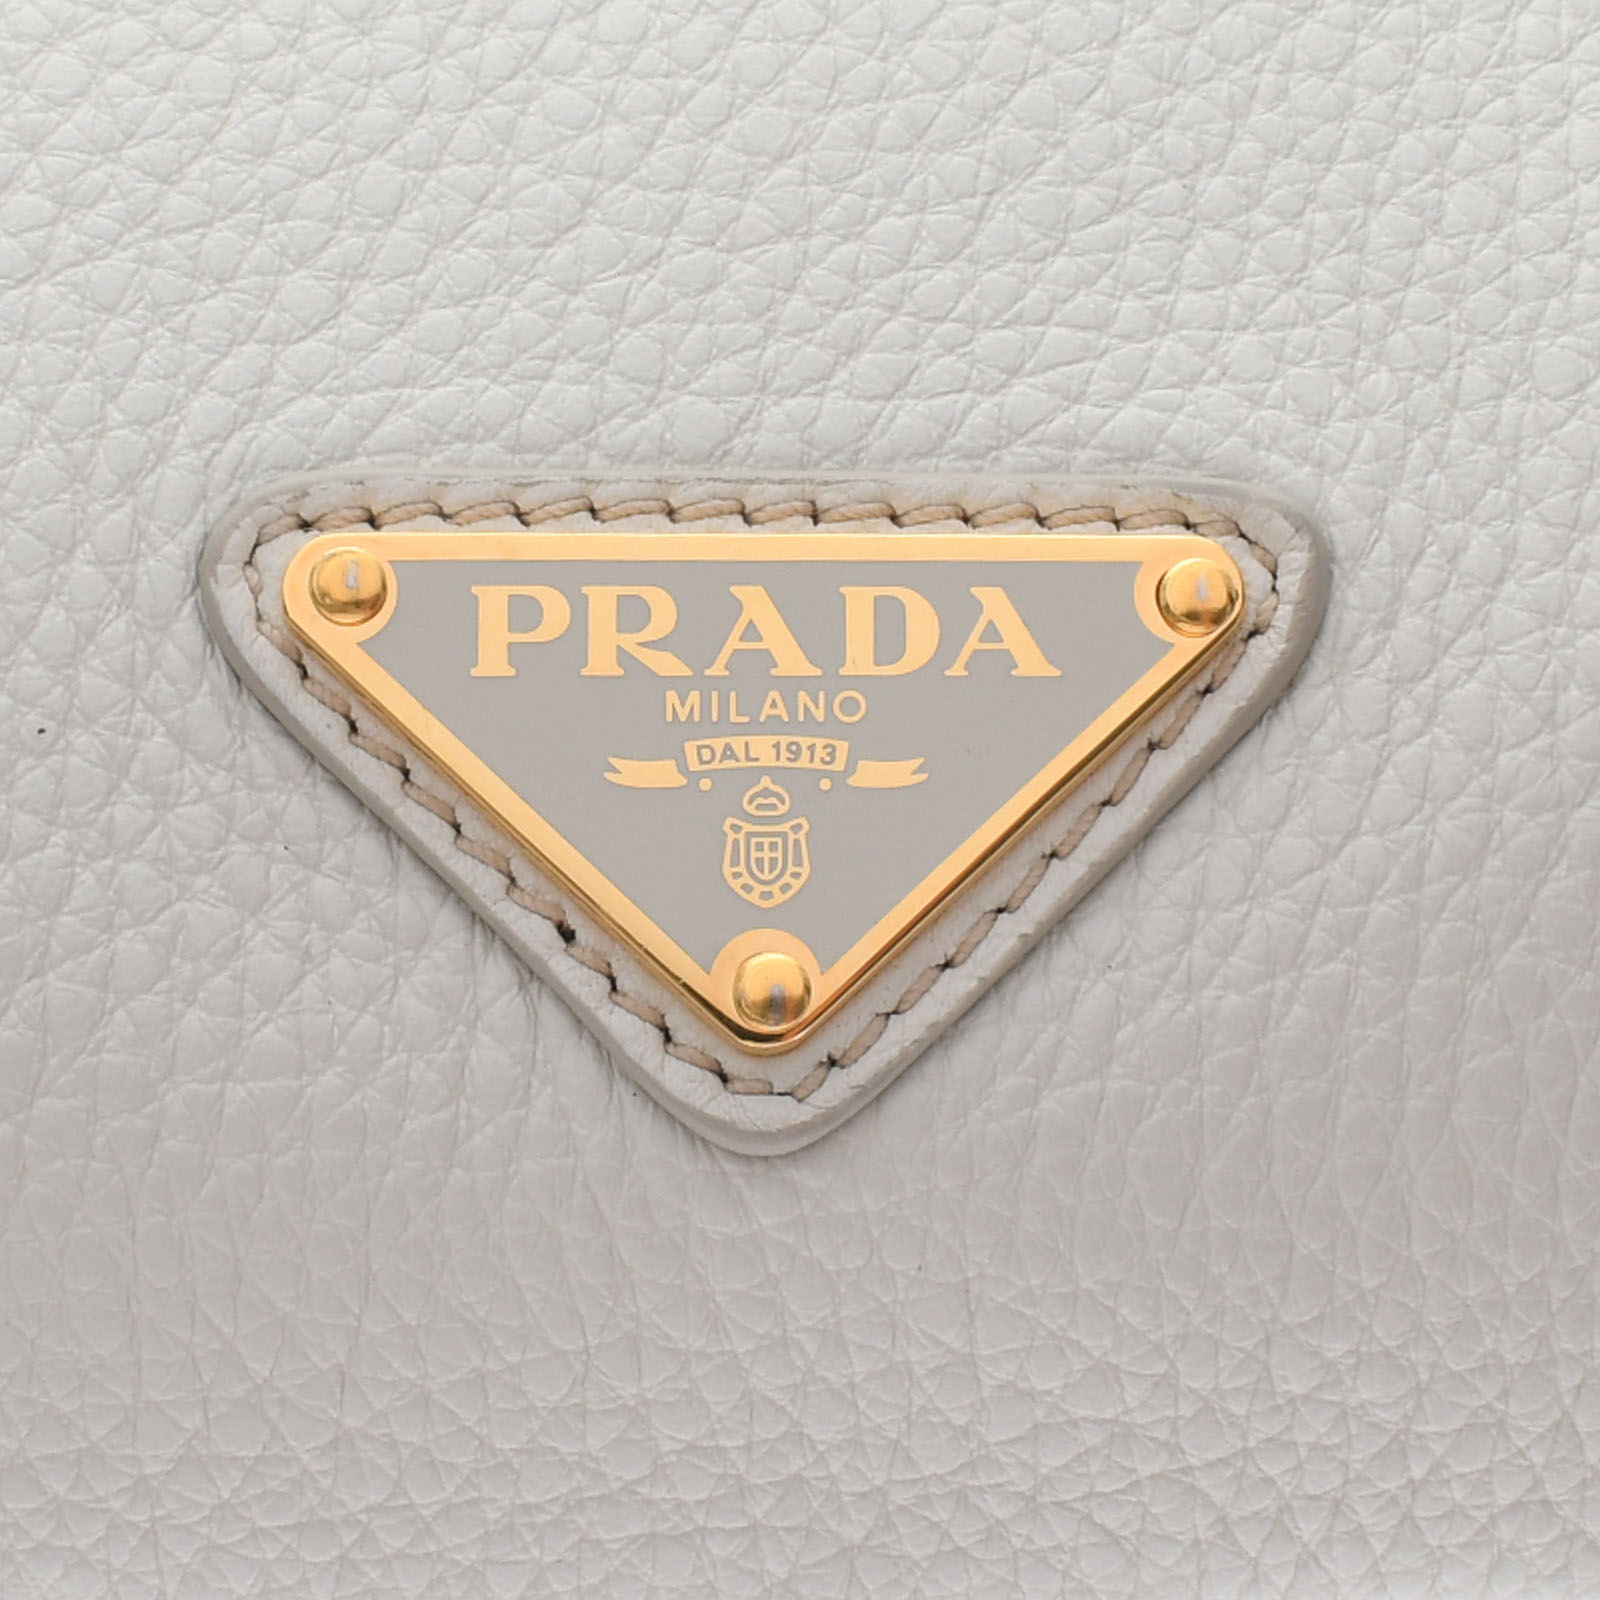 プラダ / PRADA ショルダーバッグ 2WAY タルコ/ゴールド金具 1BF125 レザー レディース バッグ 【中古】【bag】